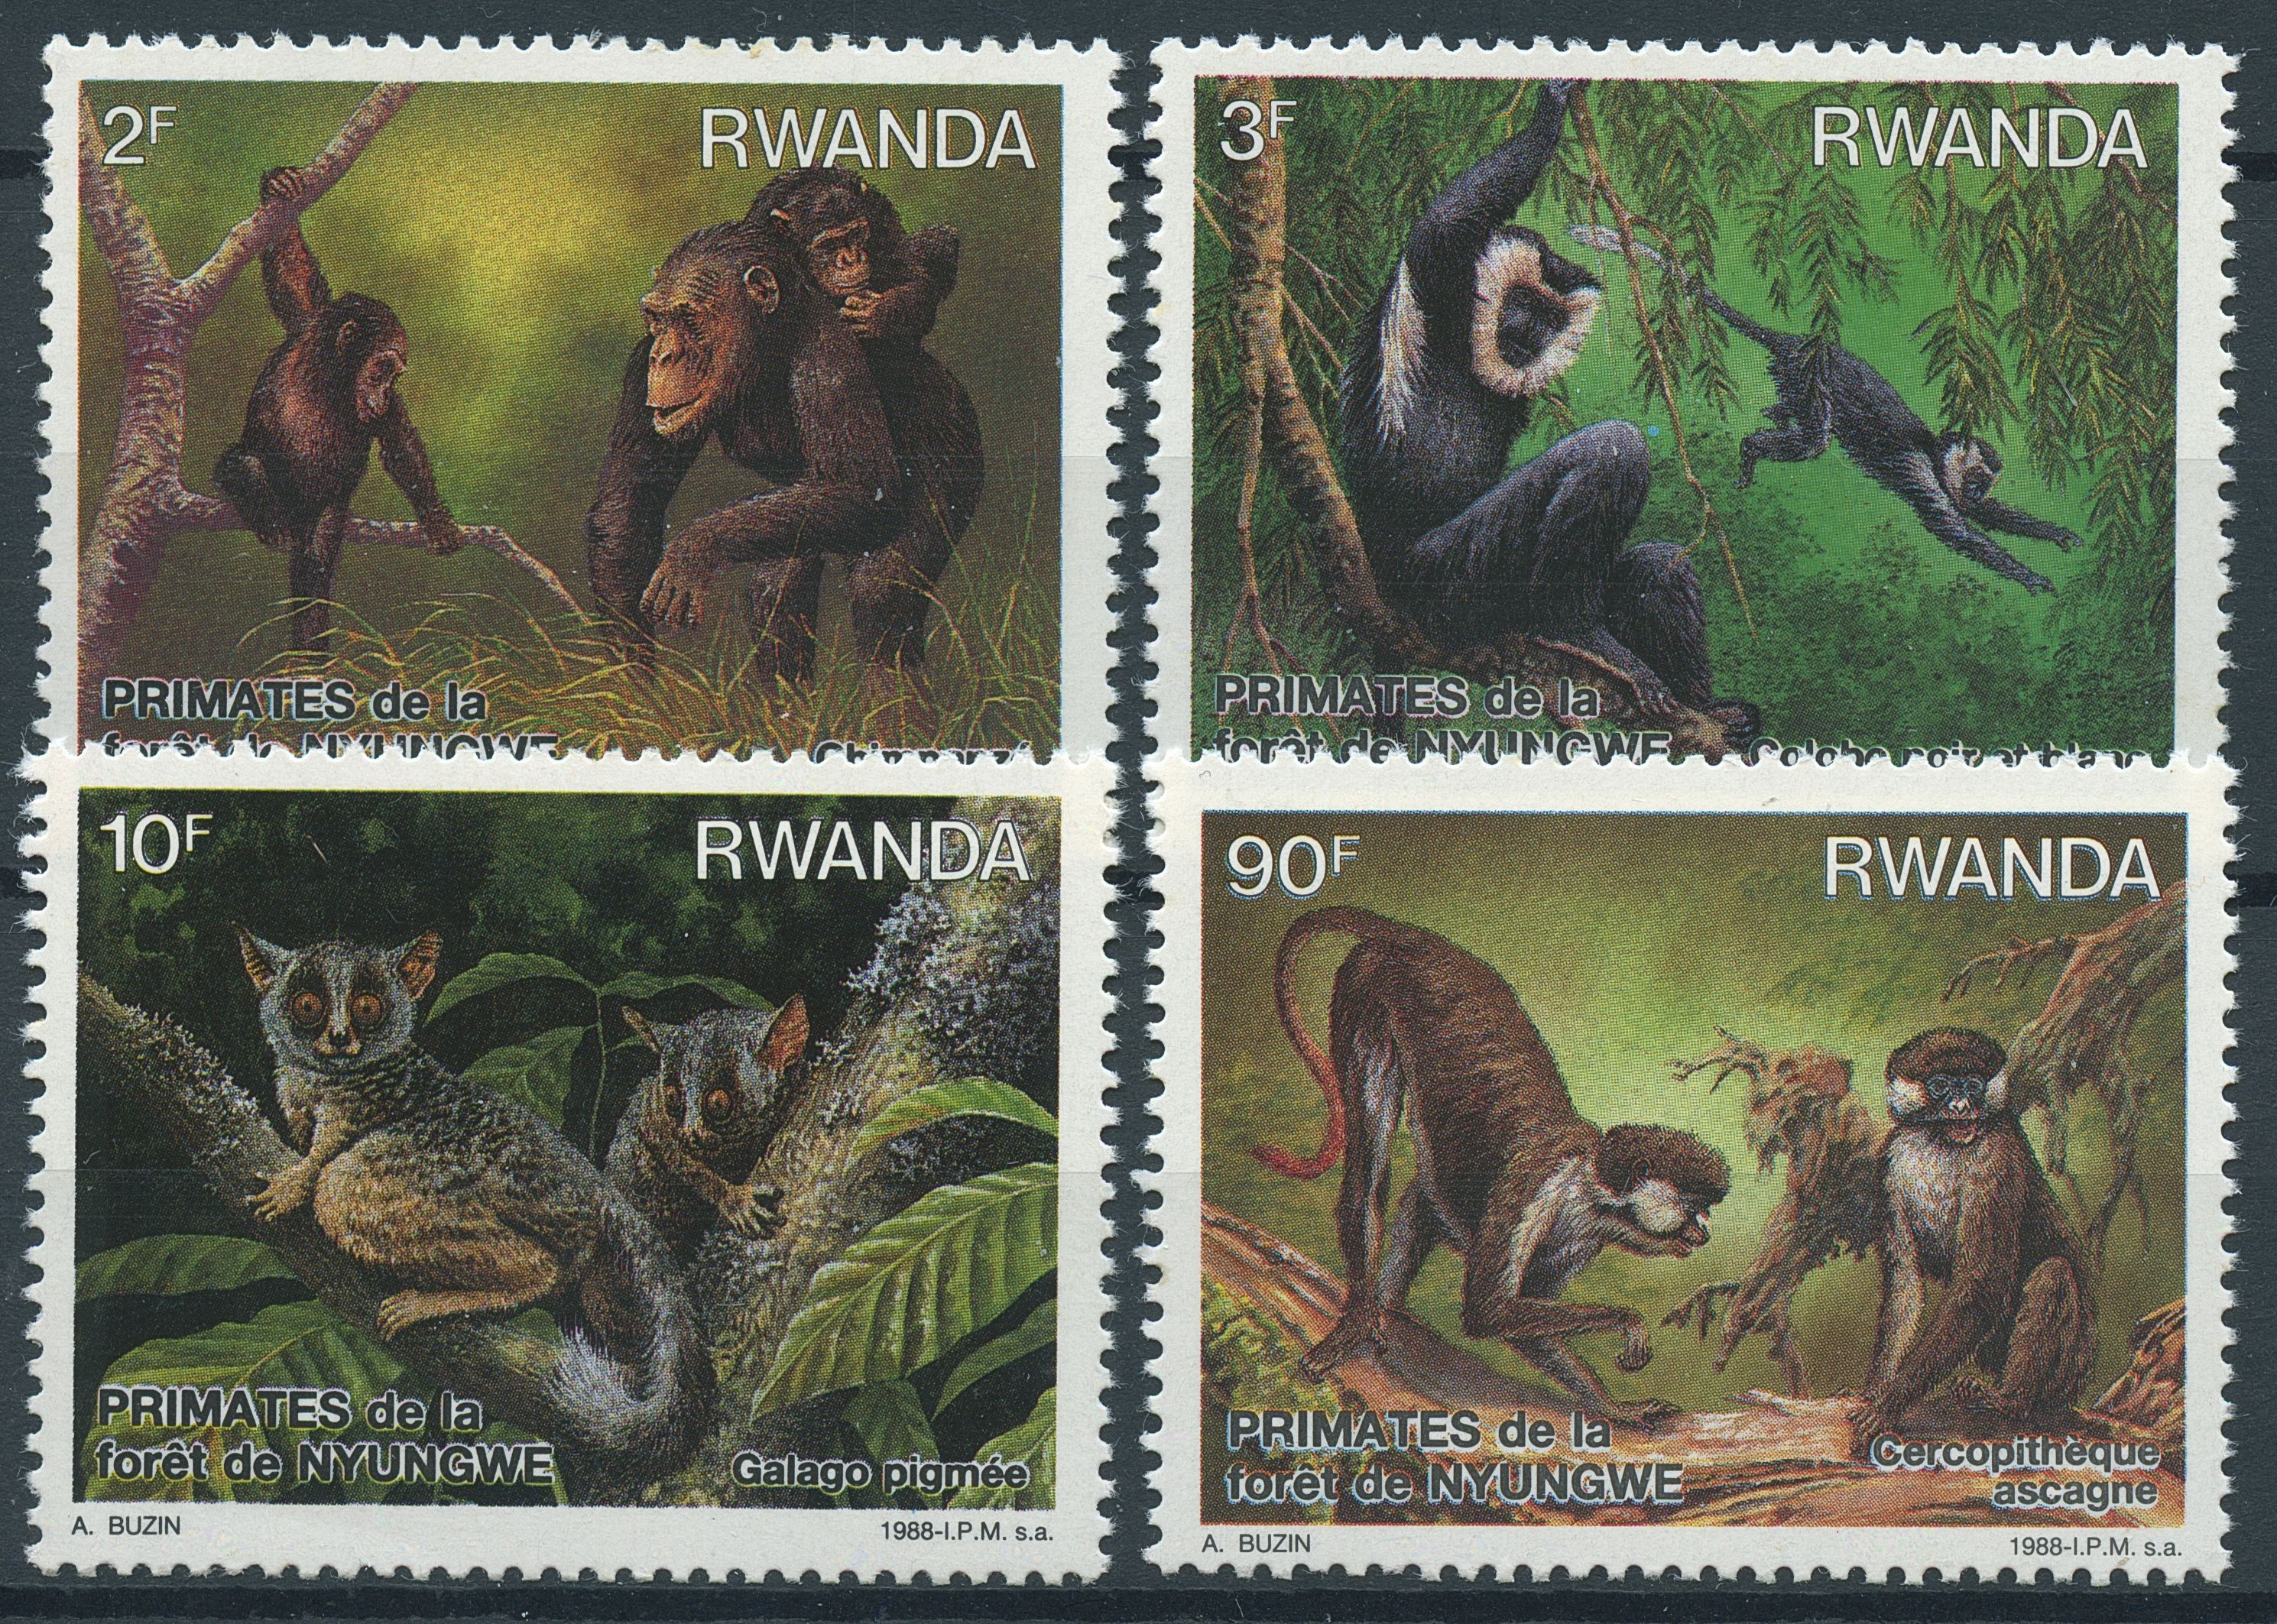 Rwanda 1988 MNH Primates of Nyungwe Forest 4v Set Galago Colobus Monkeys Stamps